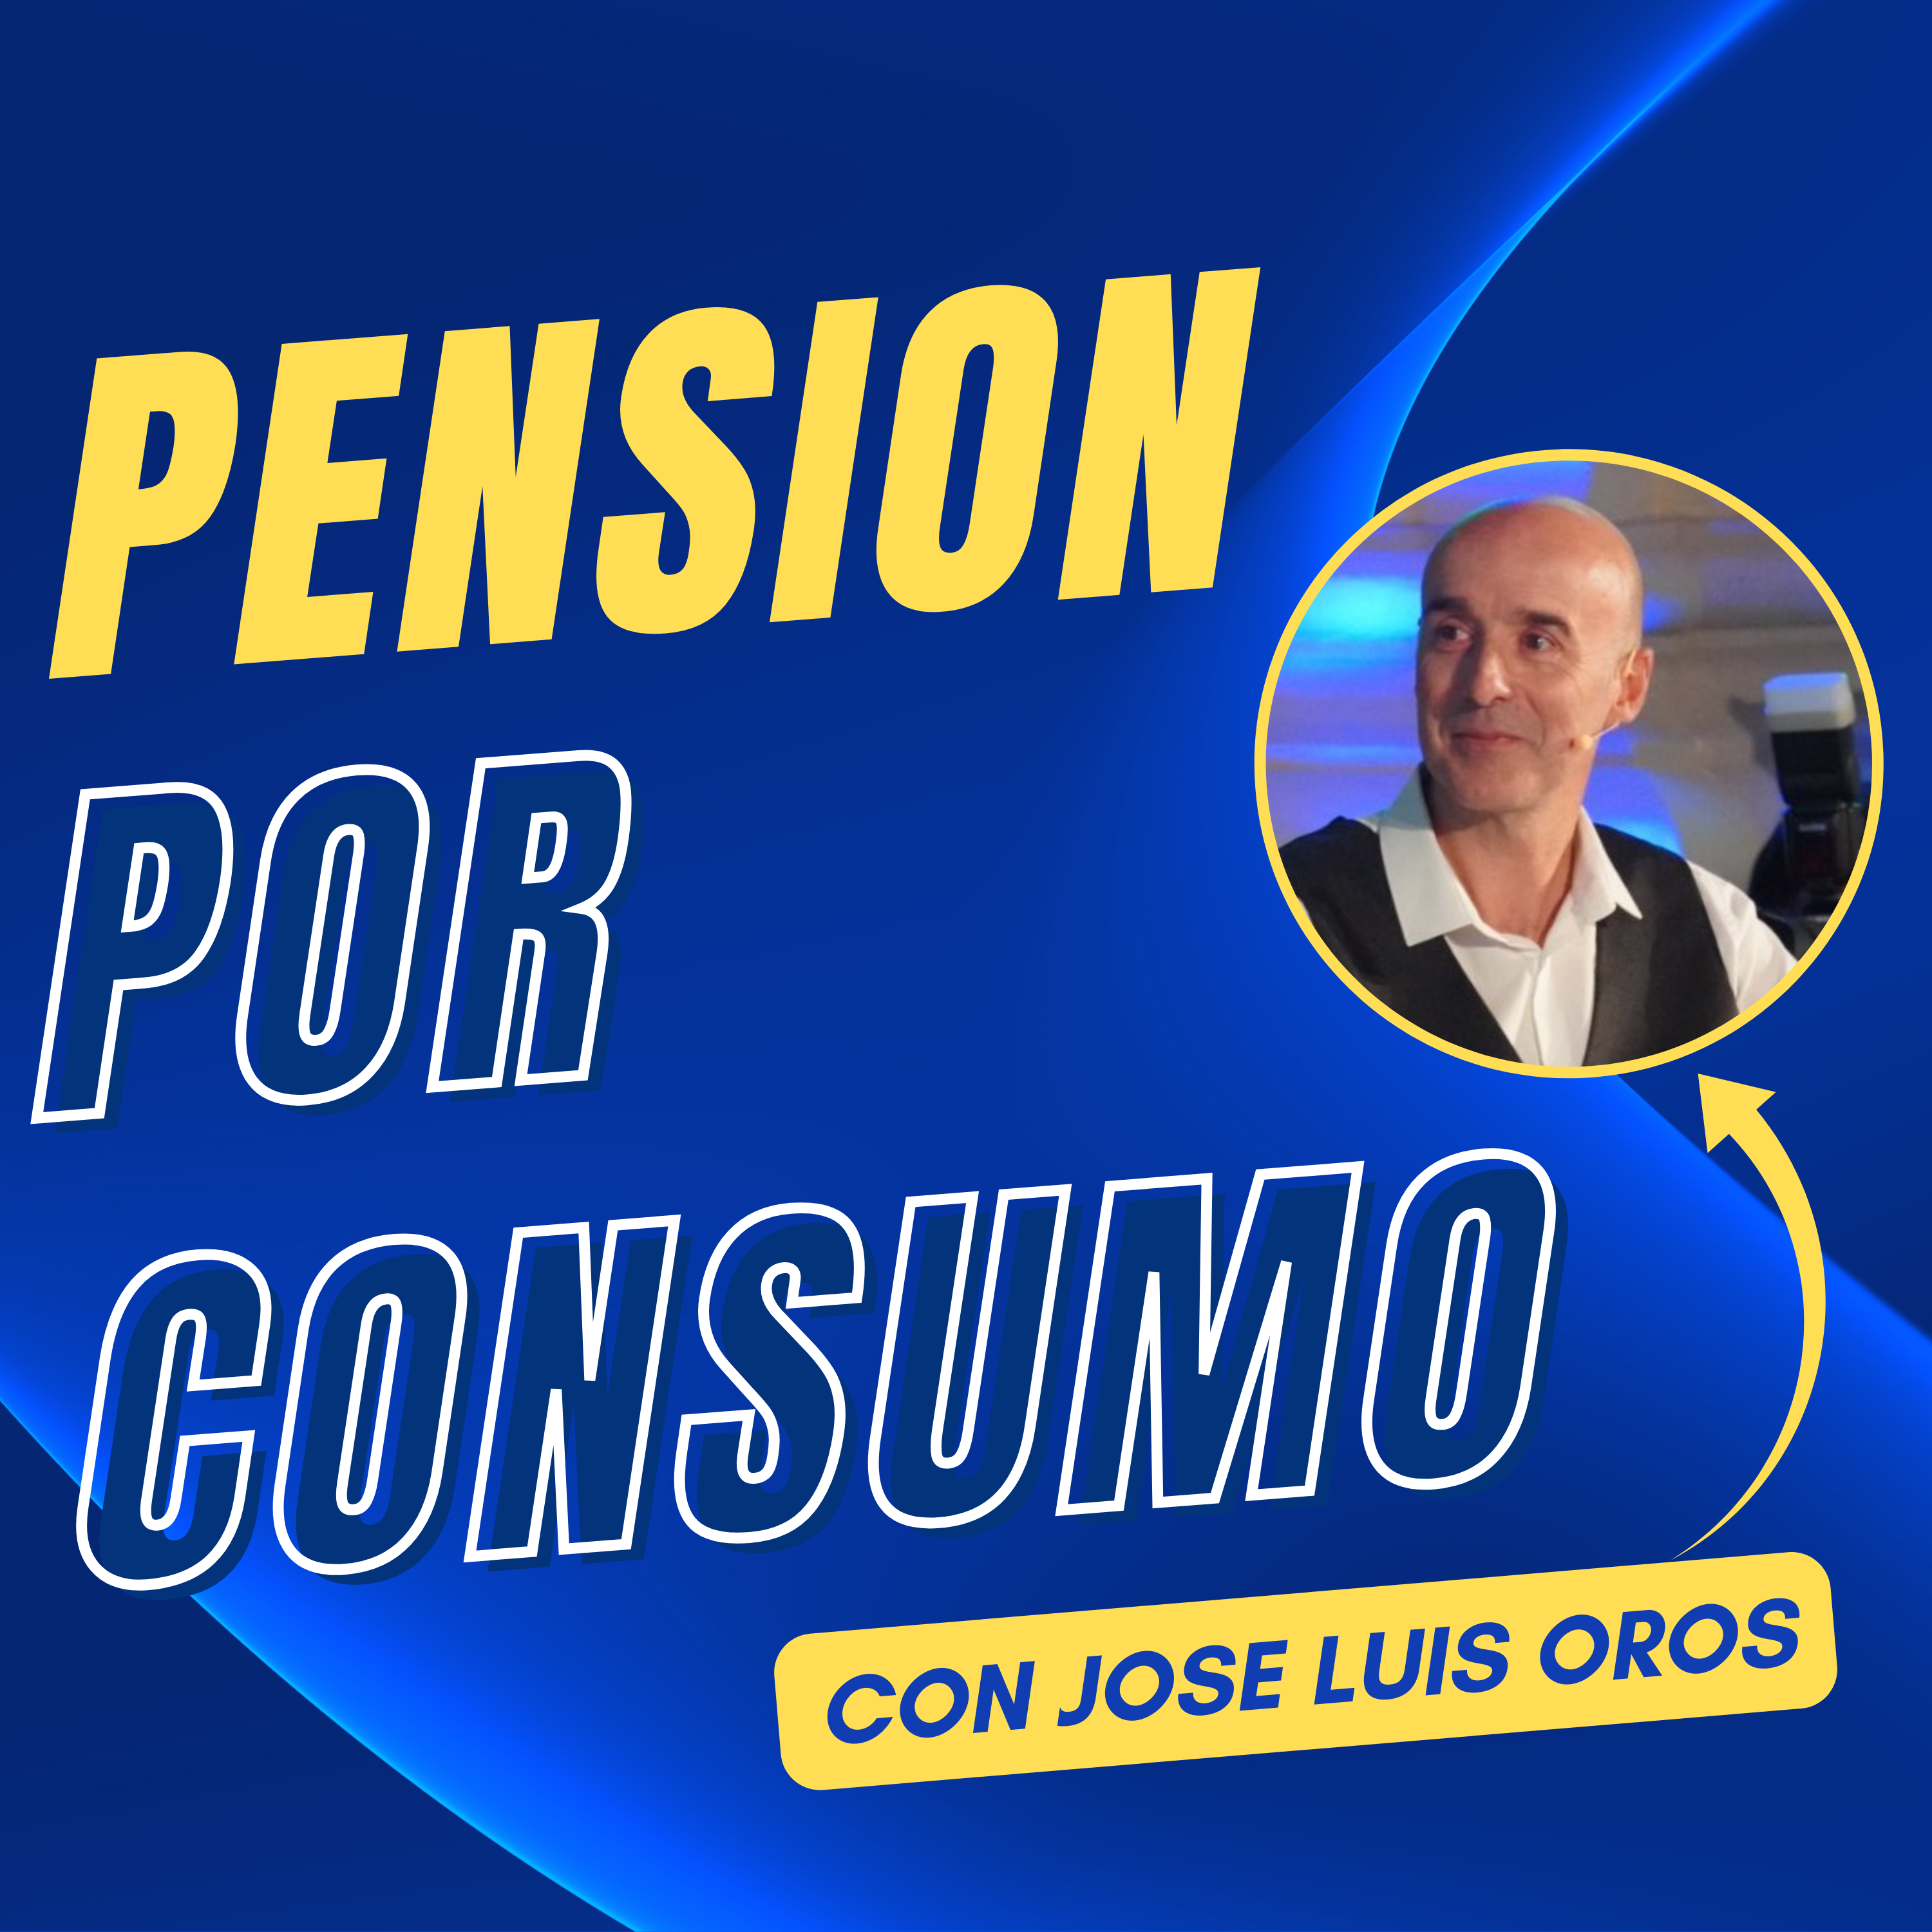 José Luis Oros explica las Pensiones por Consumo